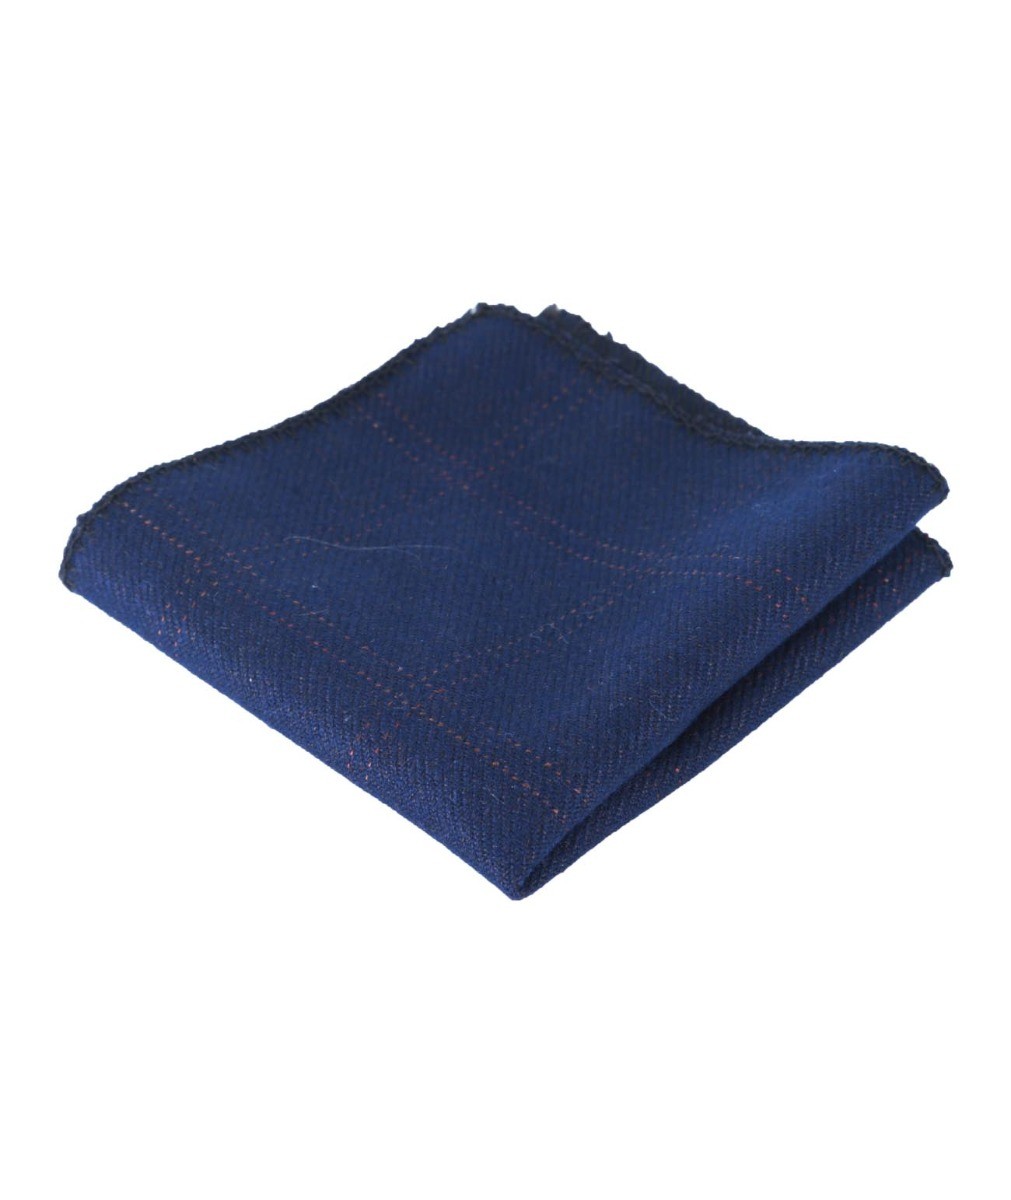 Jungen & Herren Karo Tweed Einstecktuch - Navy blau